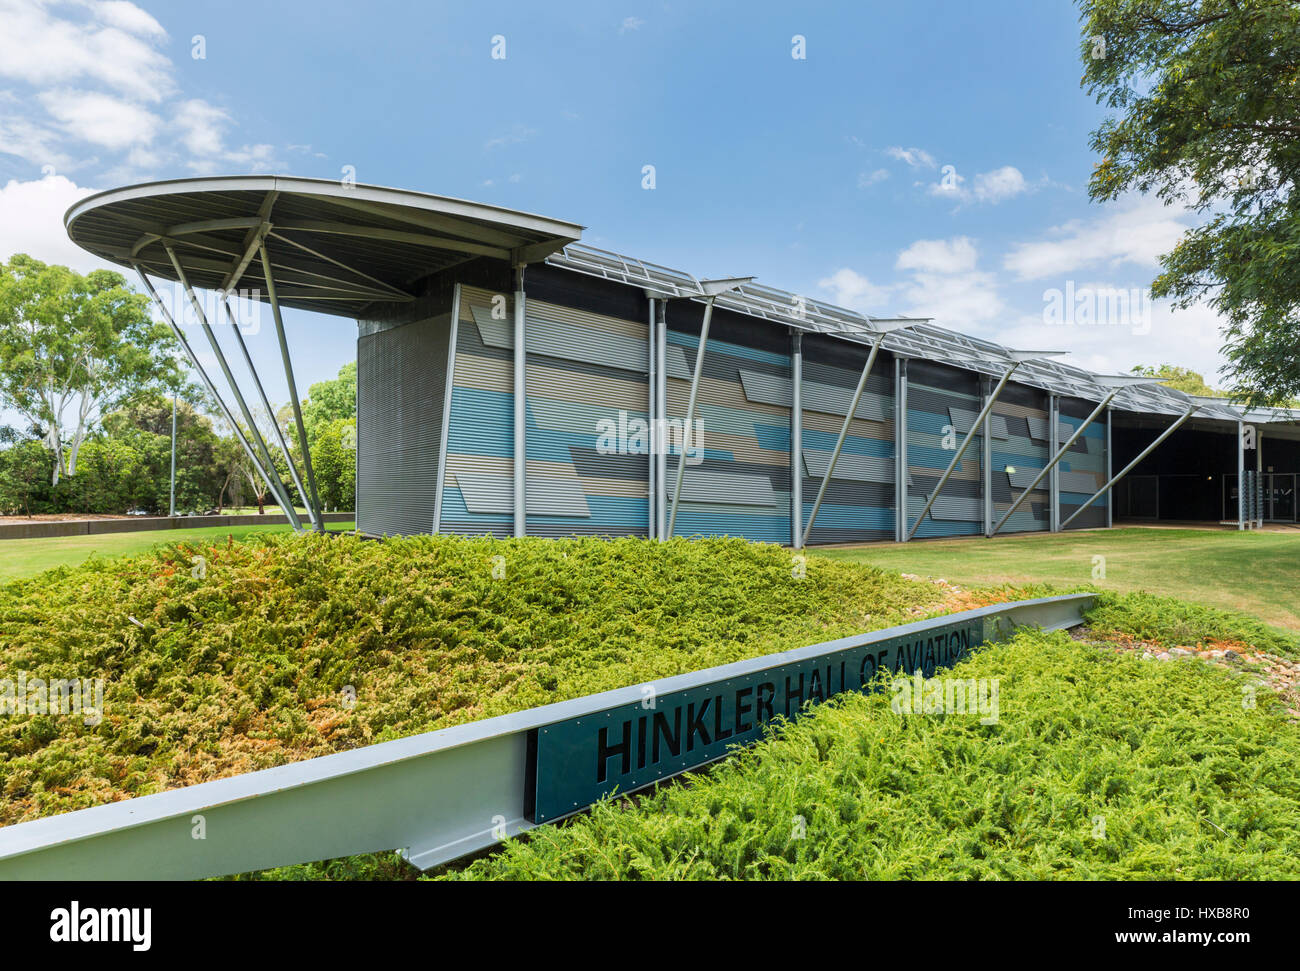 El Salón de la aviación Hinkler ubicado en el Jardín Botánico de Bundaberg. Bundaberg, Queensland, Australia Foto de stock